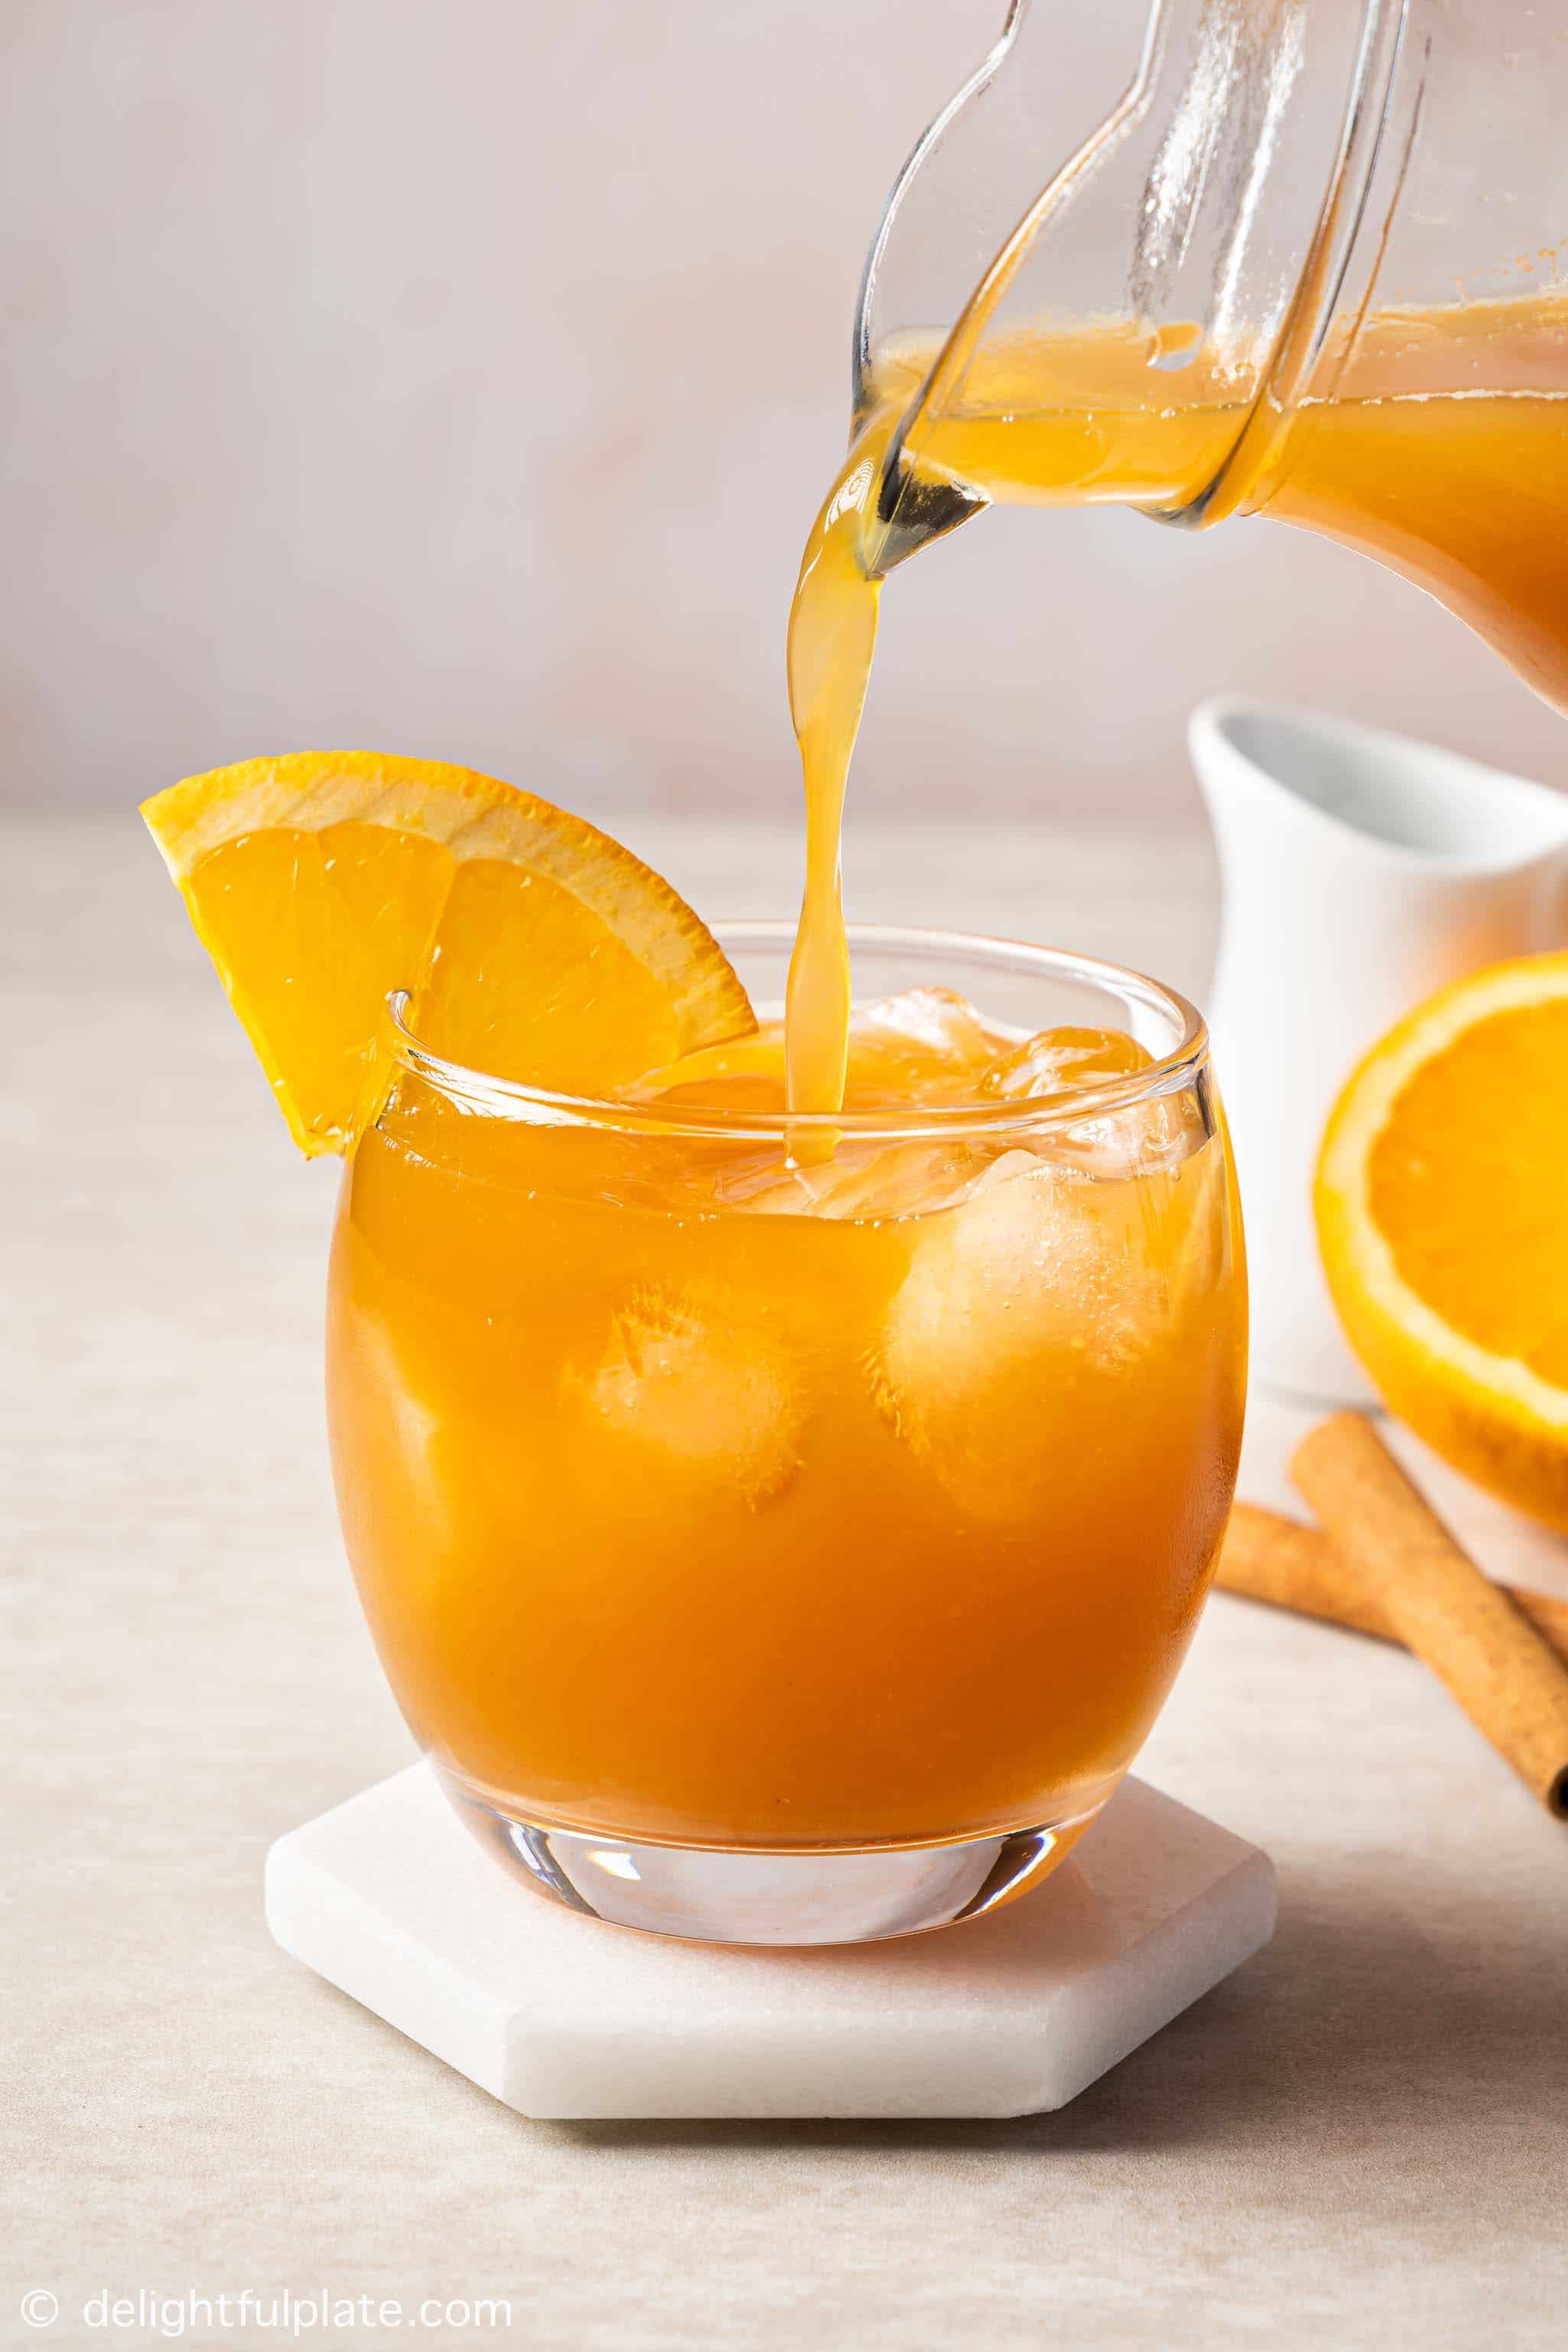 Orange-and-Cinnamon-Tea.jpg